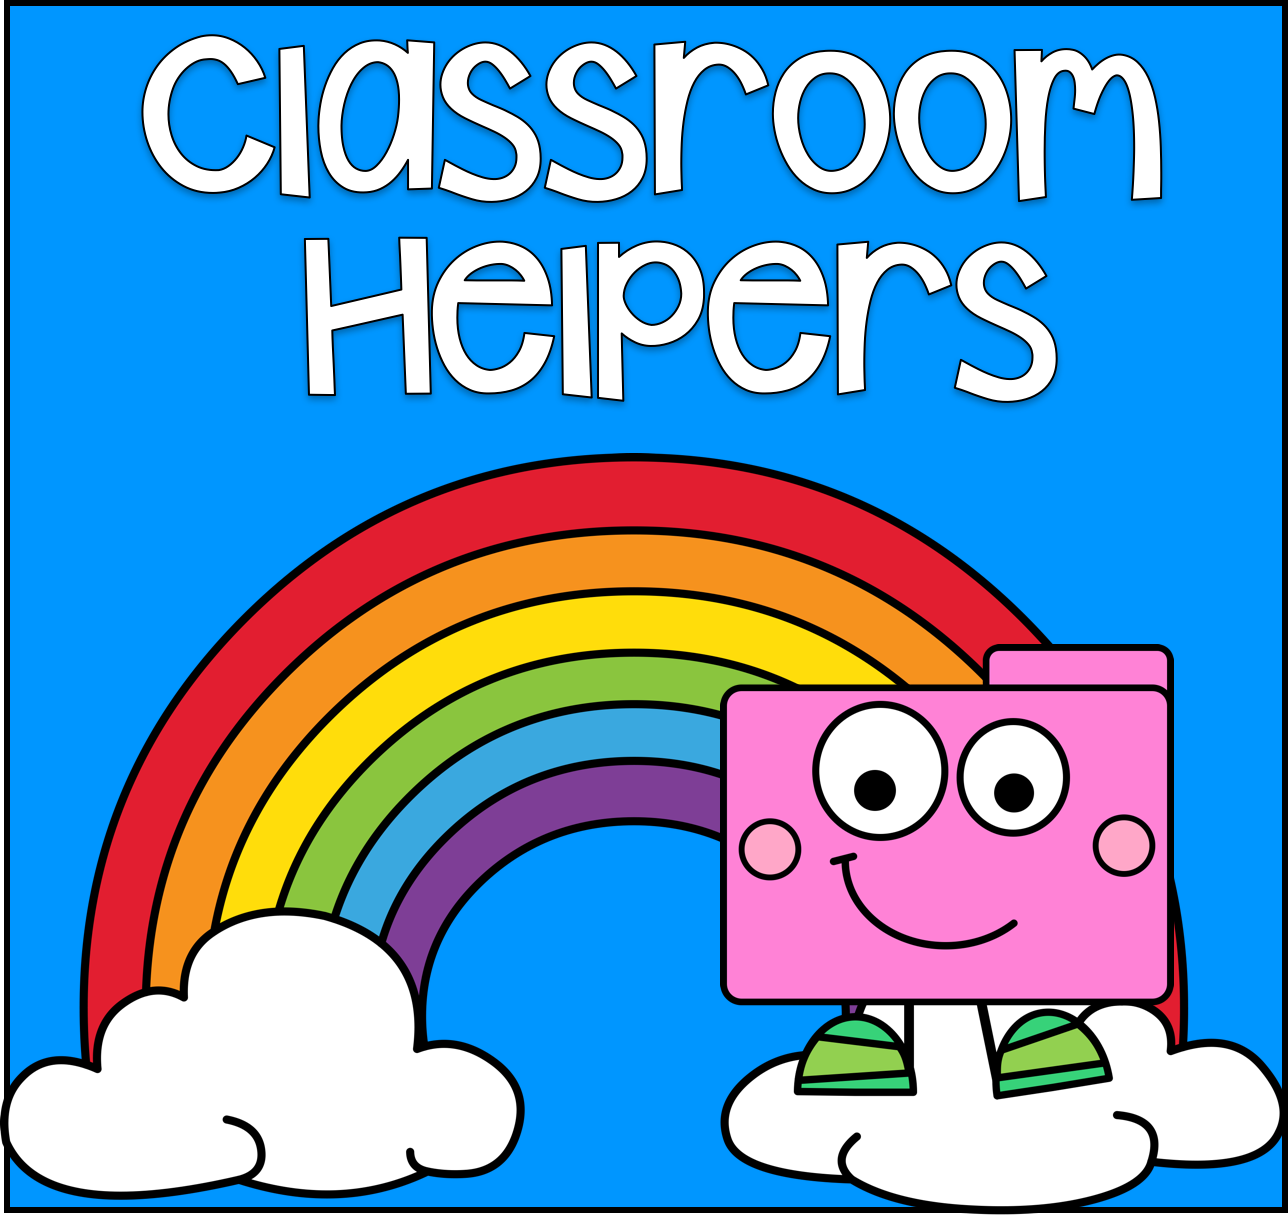 Classroom Helpers